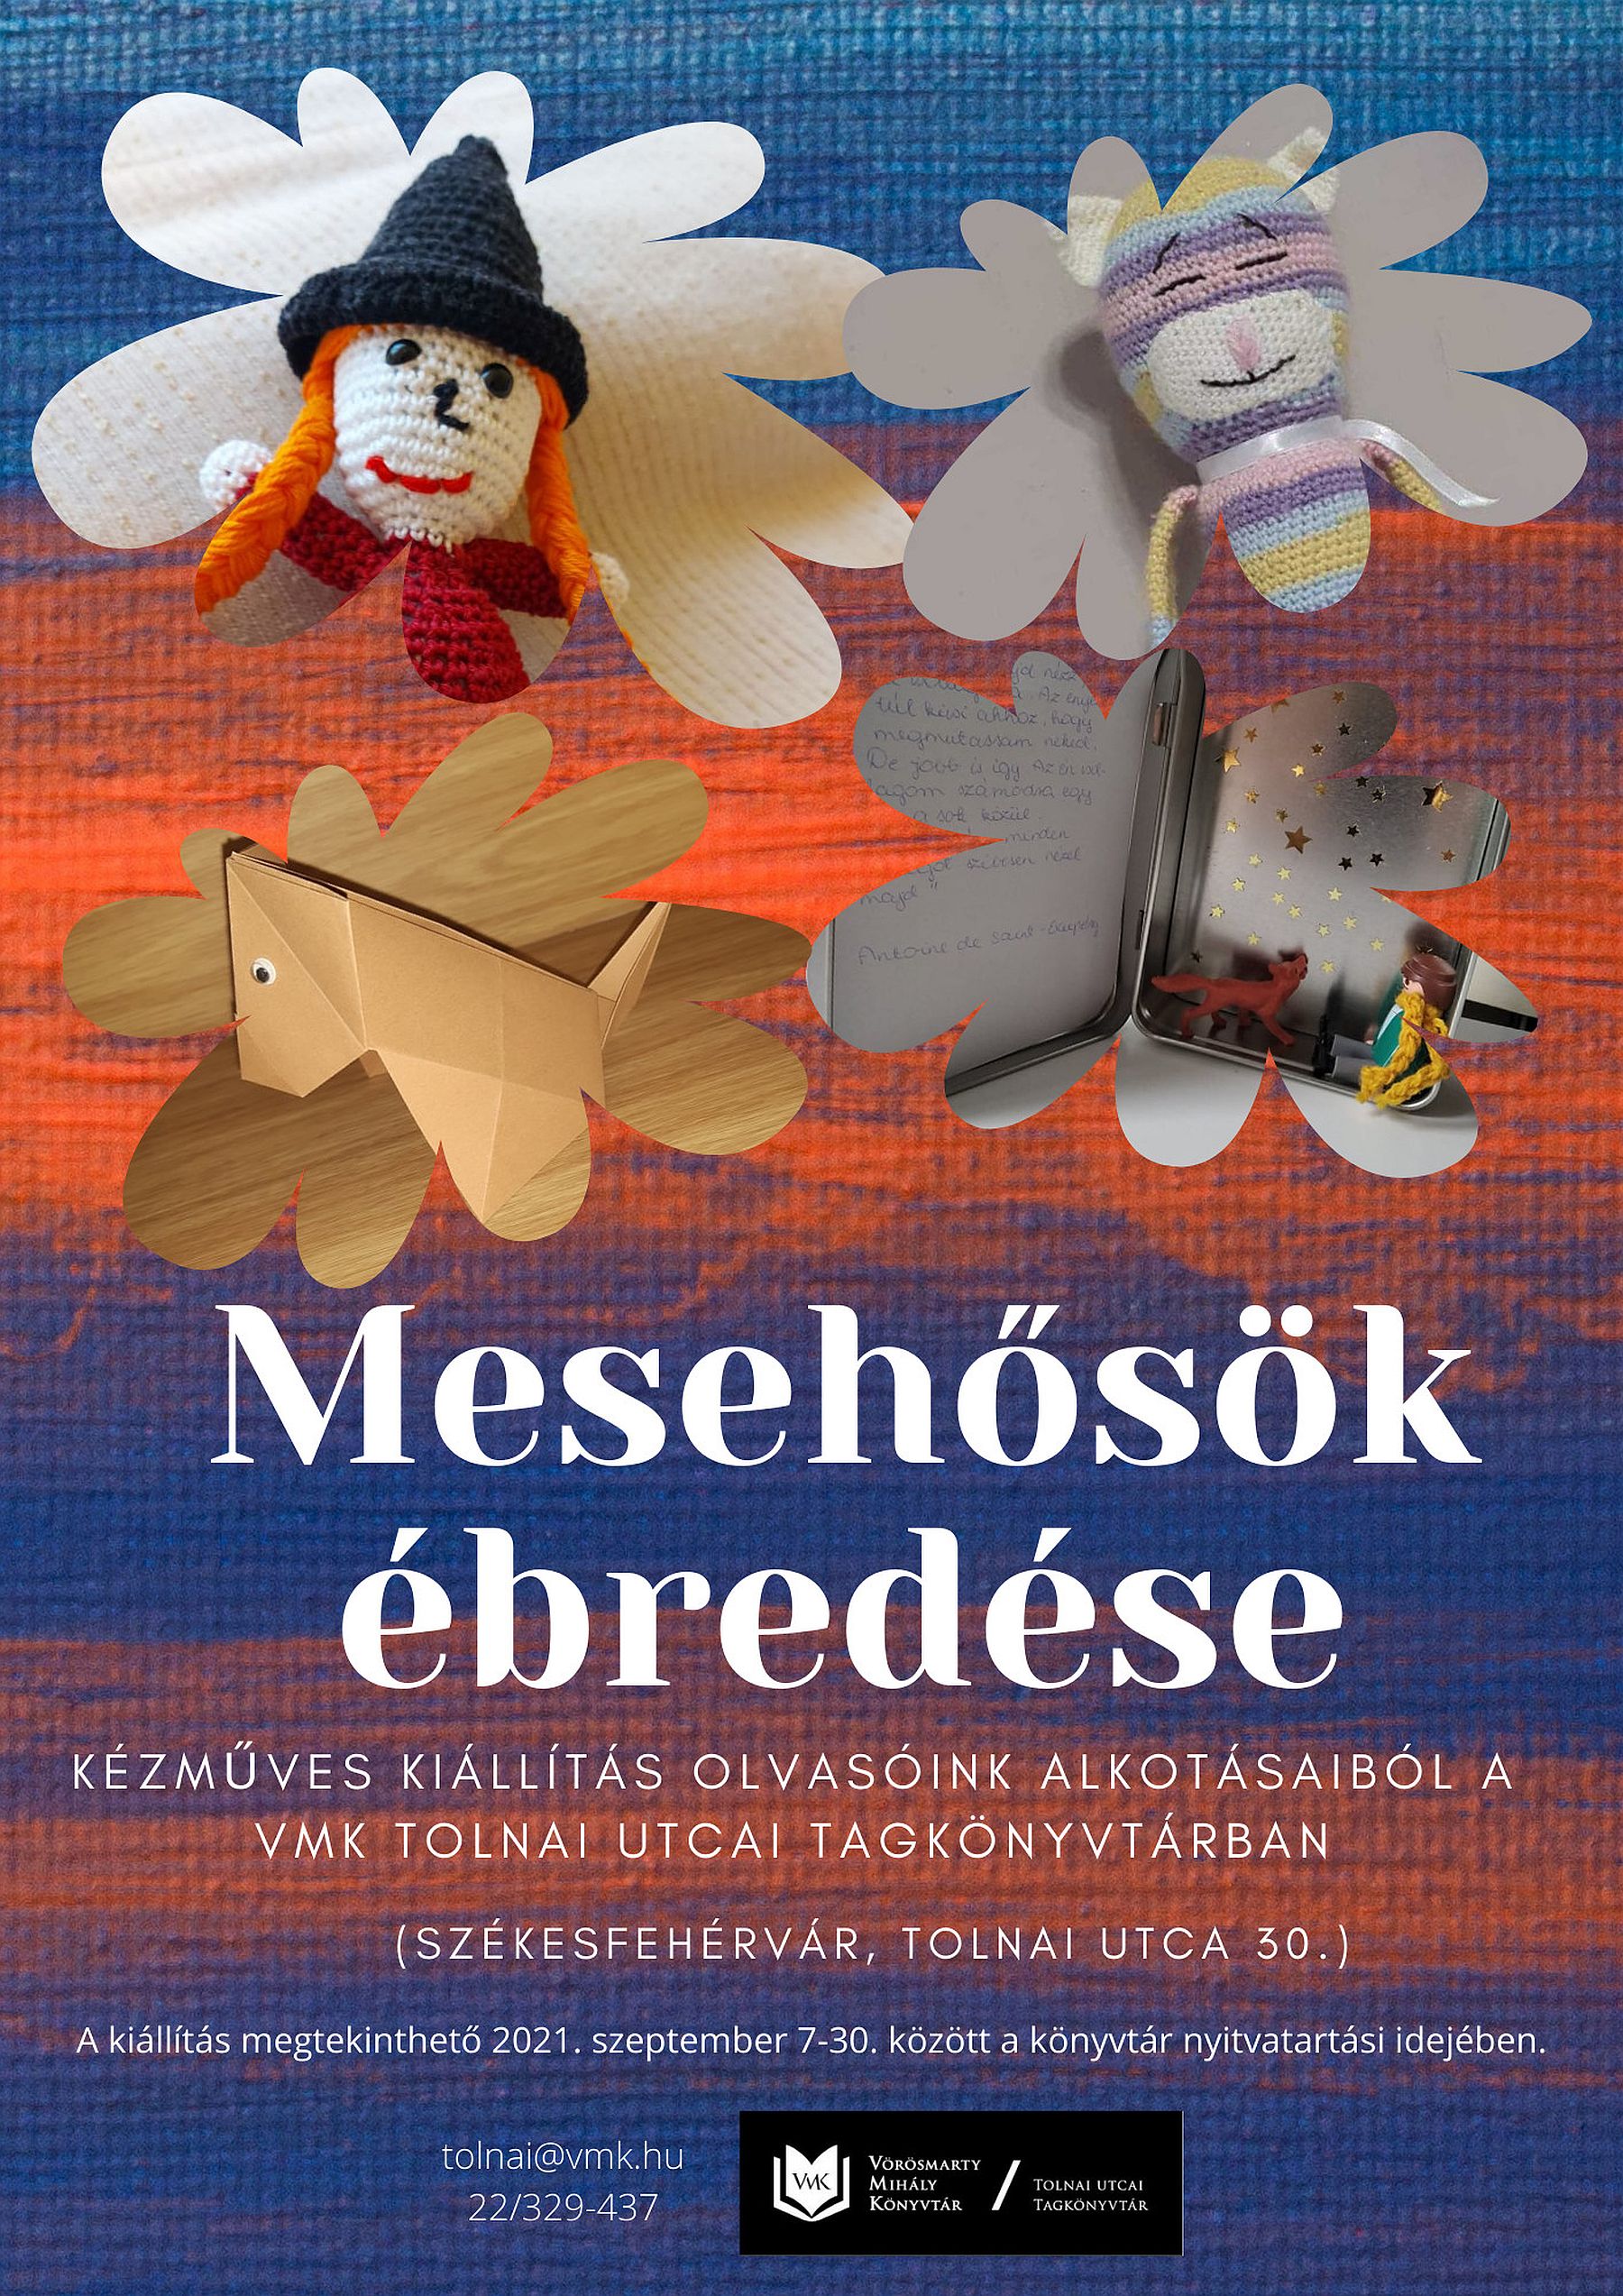 Mesehősök ébredése - kiállítás és pályázat a Tolnai utcai Tagkönyvtárban